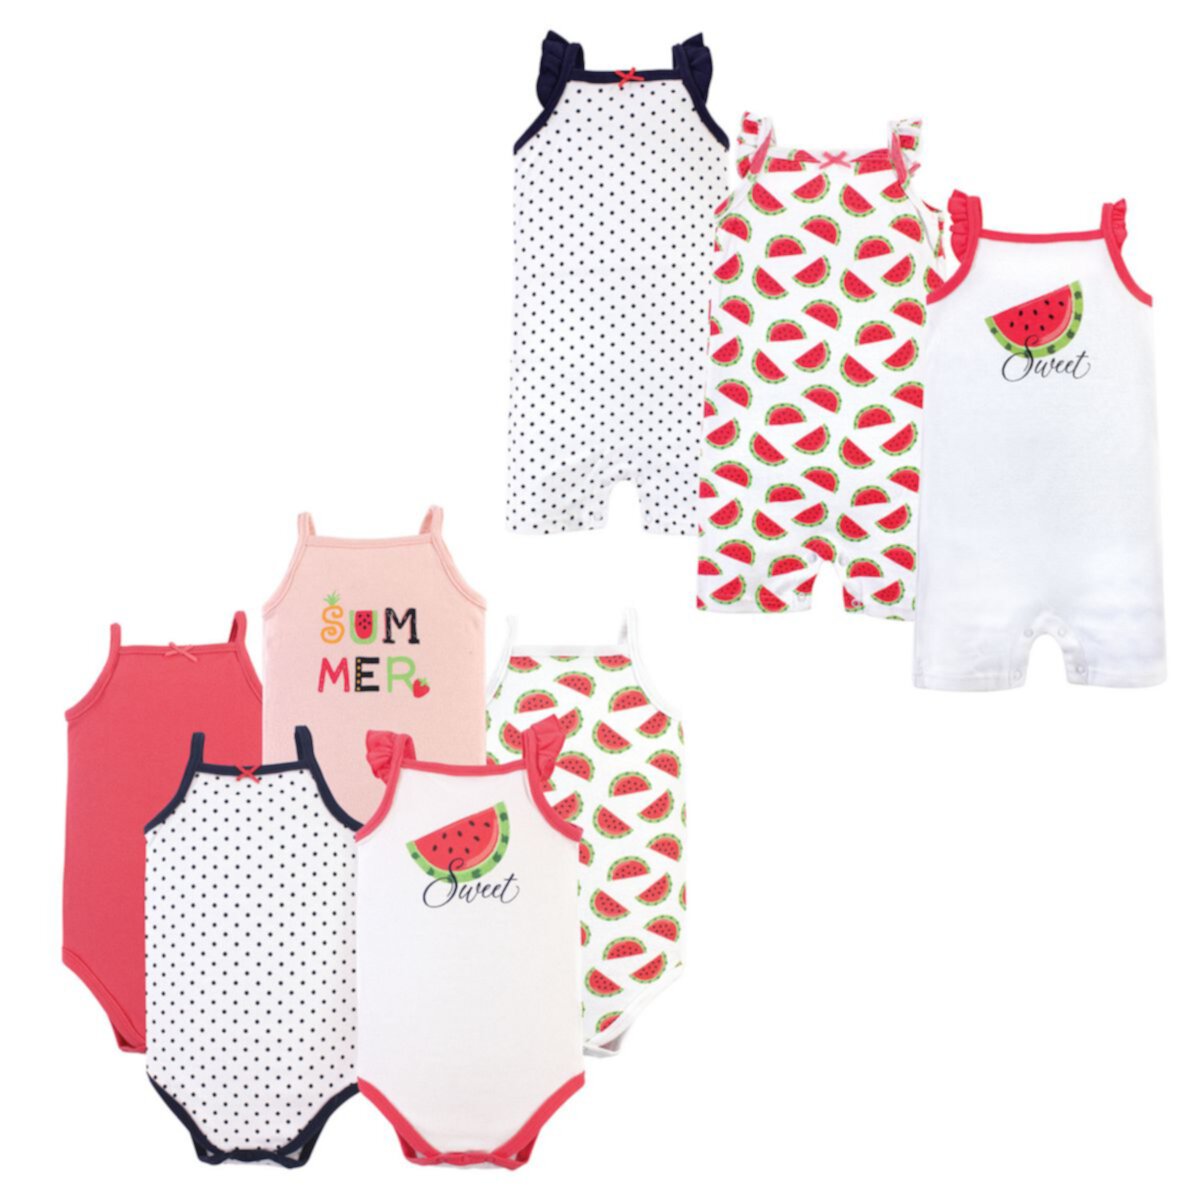 Детские комплекты одежды Hudson Baby Для девочек Cotton Bodysuits and Rompers, 8-Piece, Watermelon, 12-18 месяцев Hudson Baby